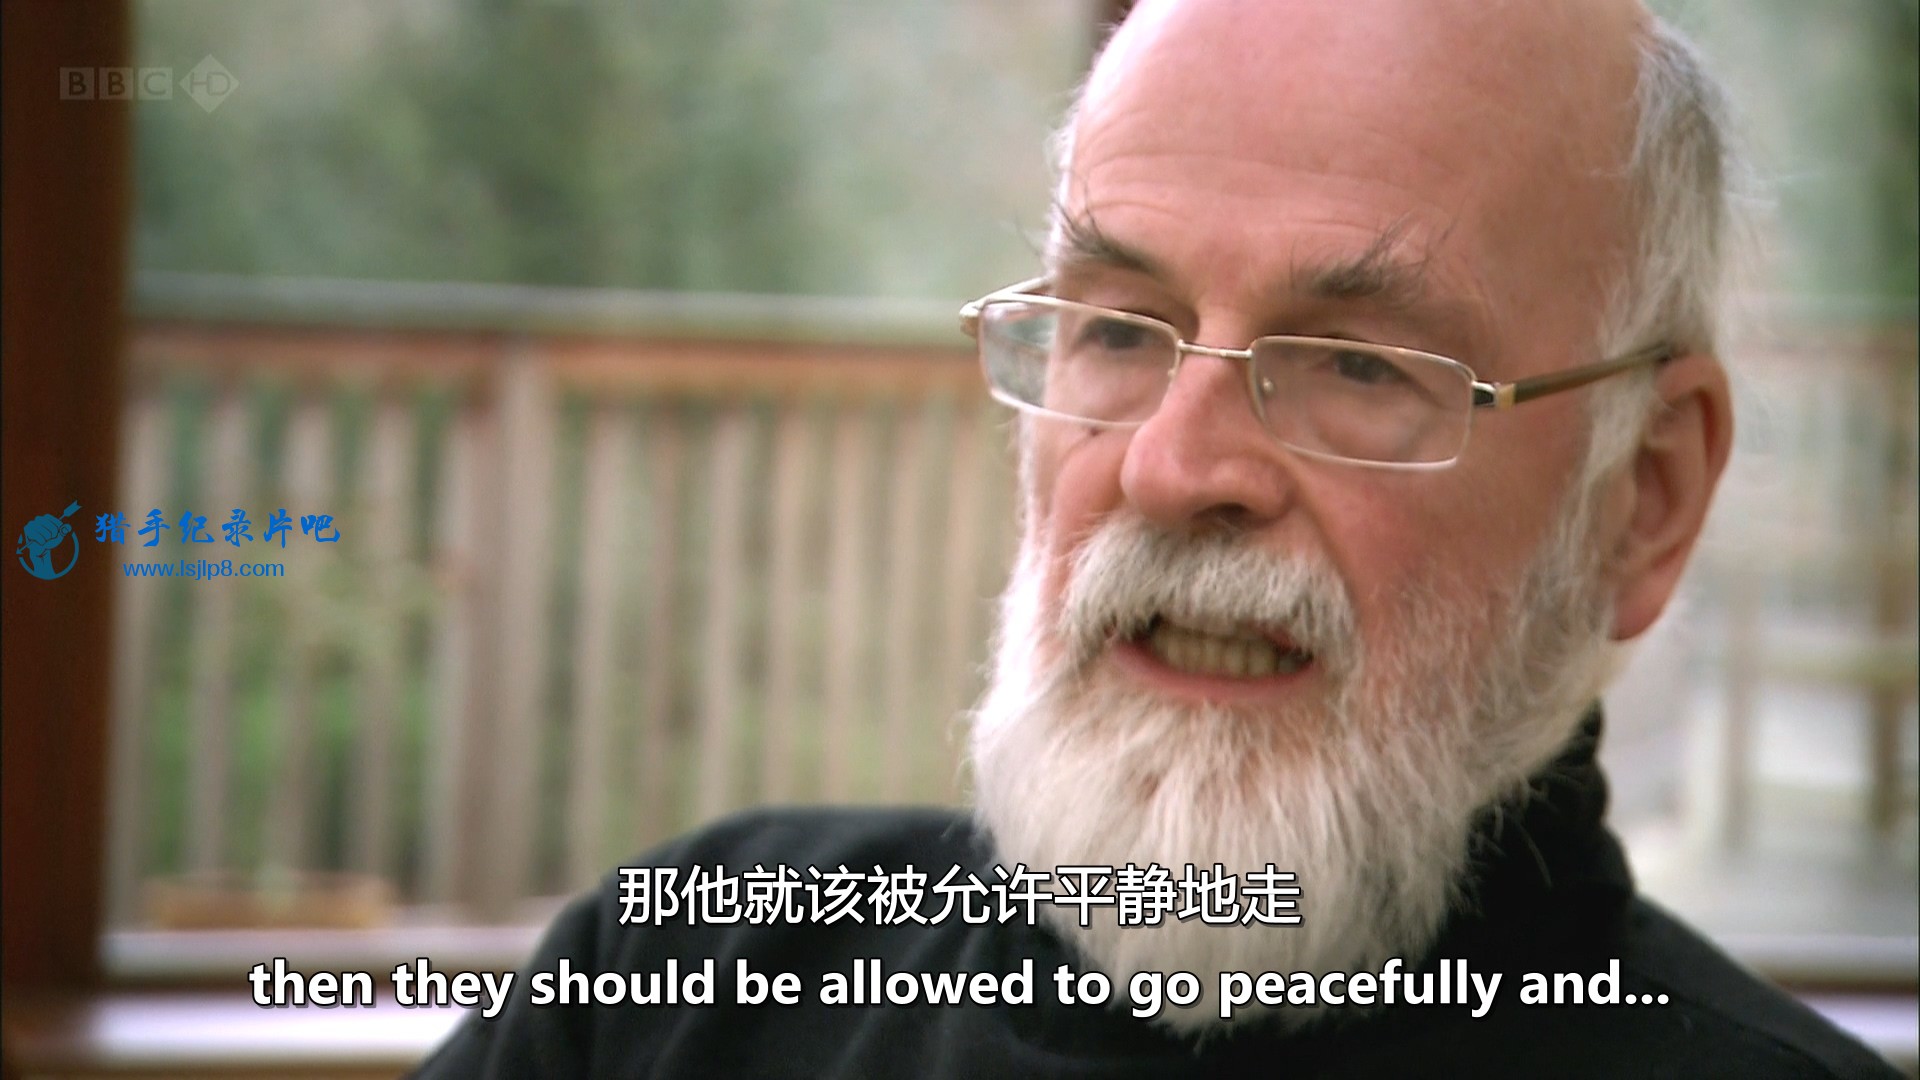 BBC.Terry.Pratchett.Choosing.to.Die.1080i.HDTV.MVGroup.mkv_20190930_091143.175.jpg